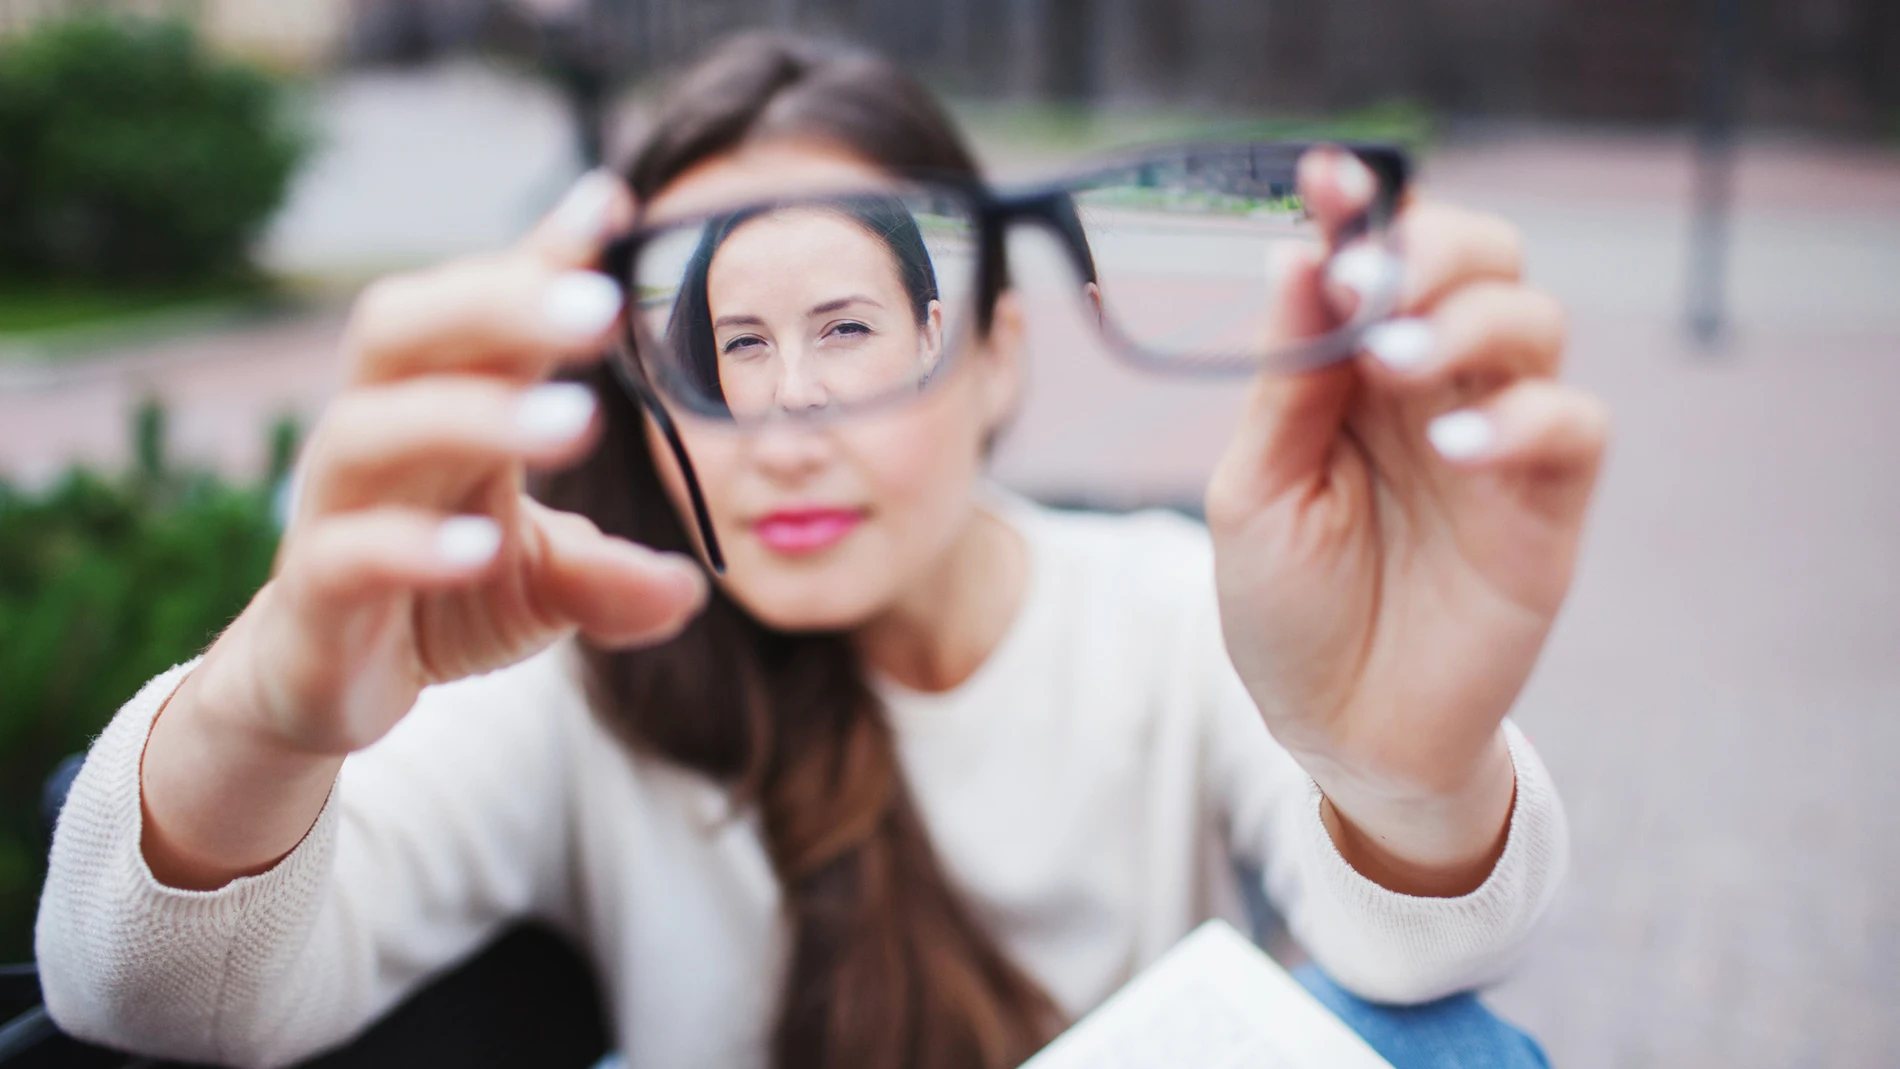 Llevar gafas o lentillas puede cansar e incluso impedir el tener una buena calidad de vida en nuestro día a día